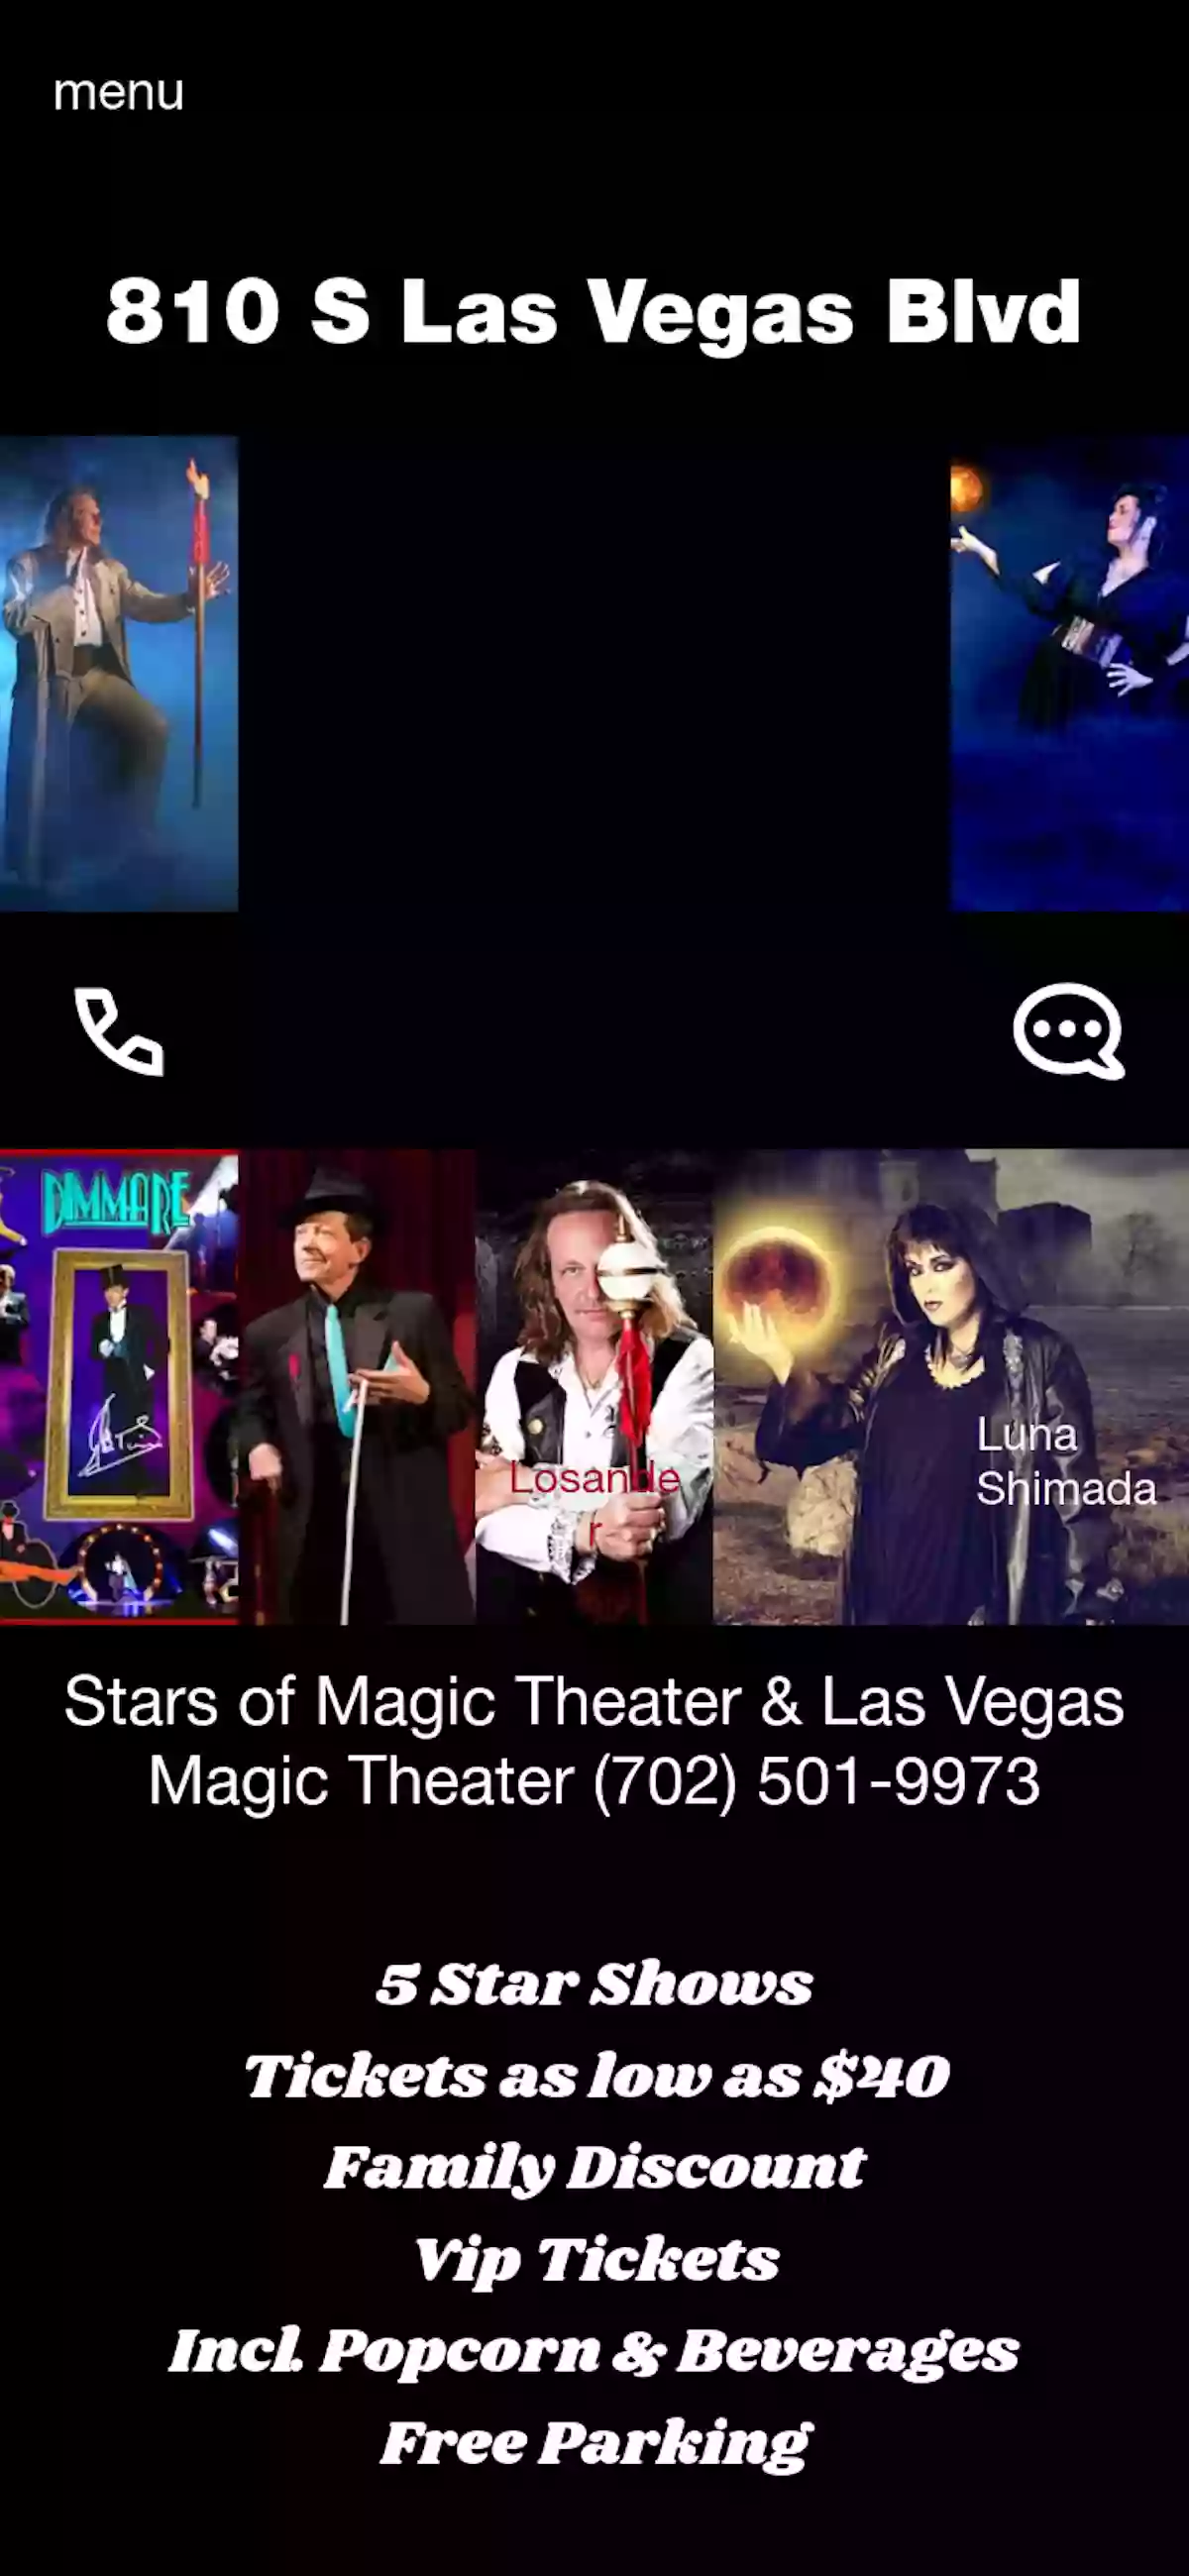 Las Vegas Shows Magic Theater